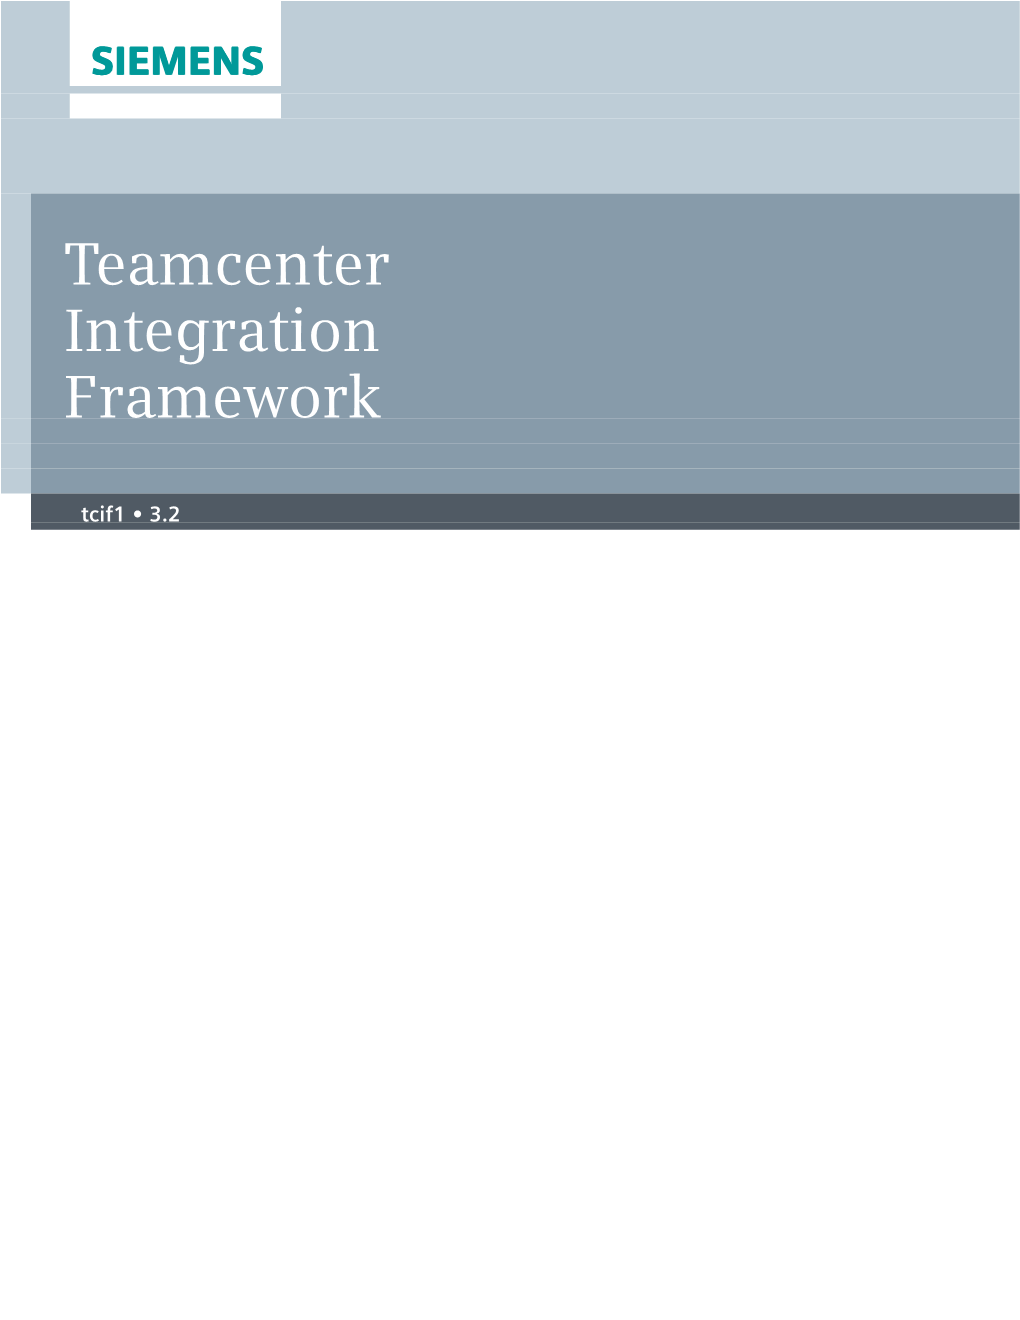 Teamcenter Integration Framework